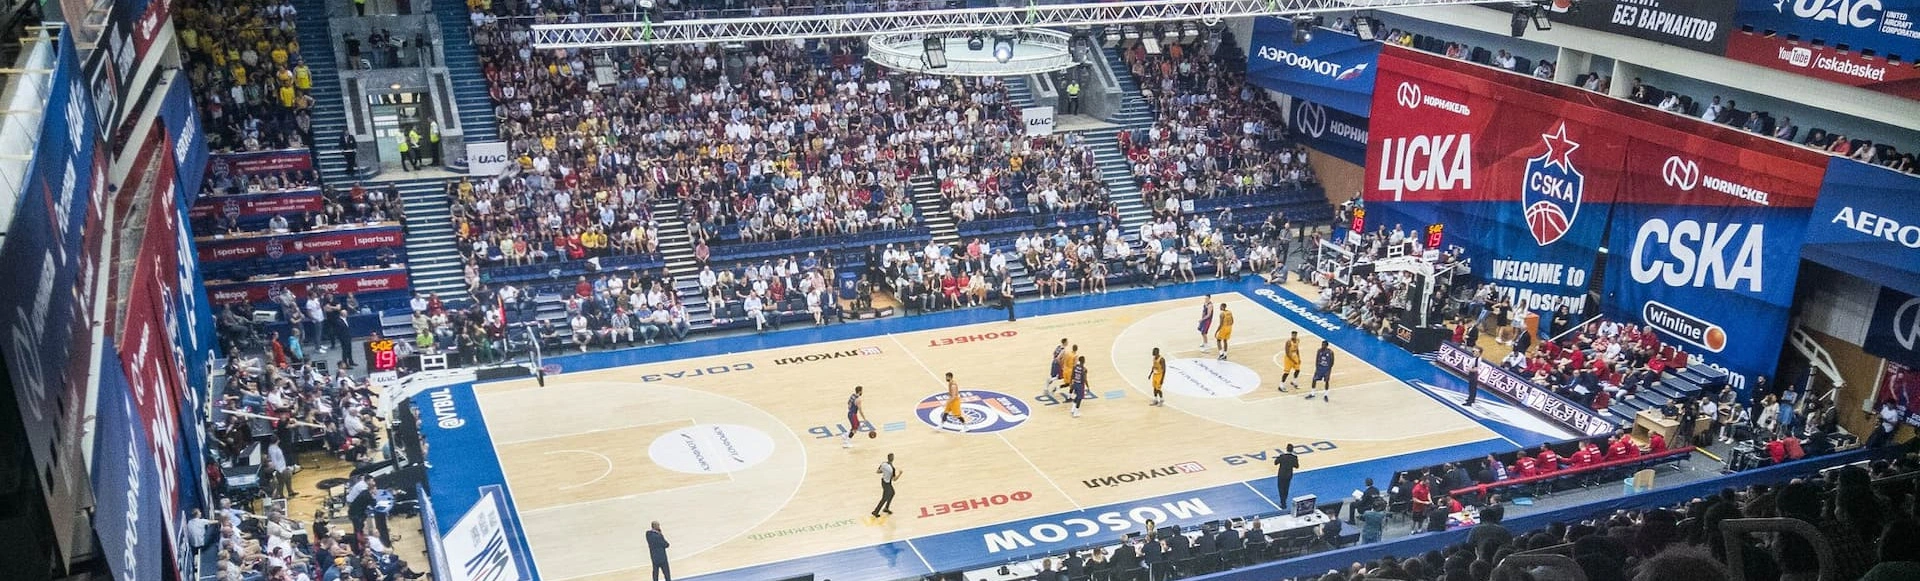 Универсальный спортивный комплекс ЦСКА готовится принять последний официальный матч